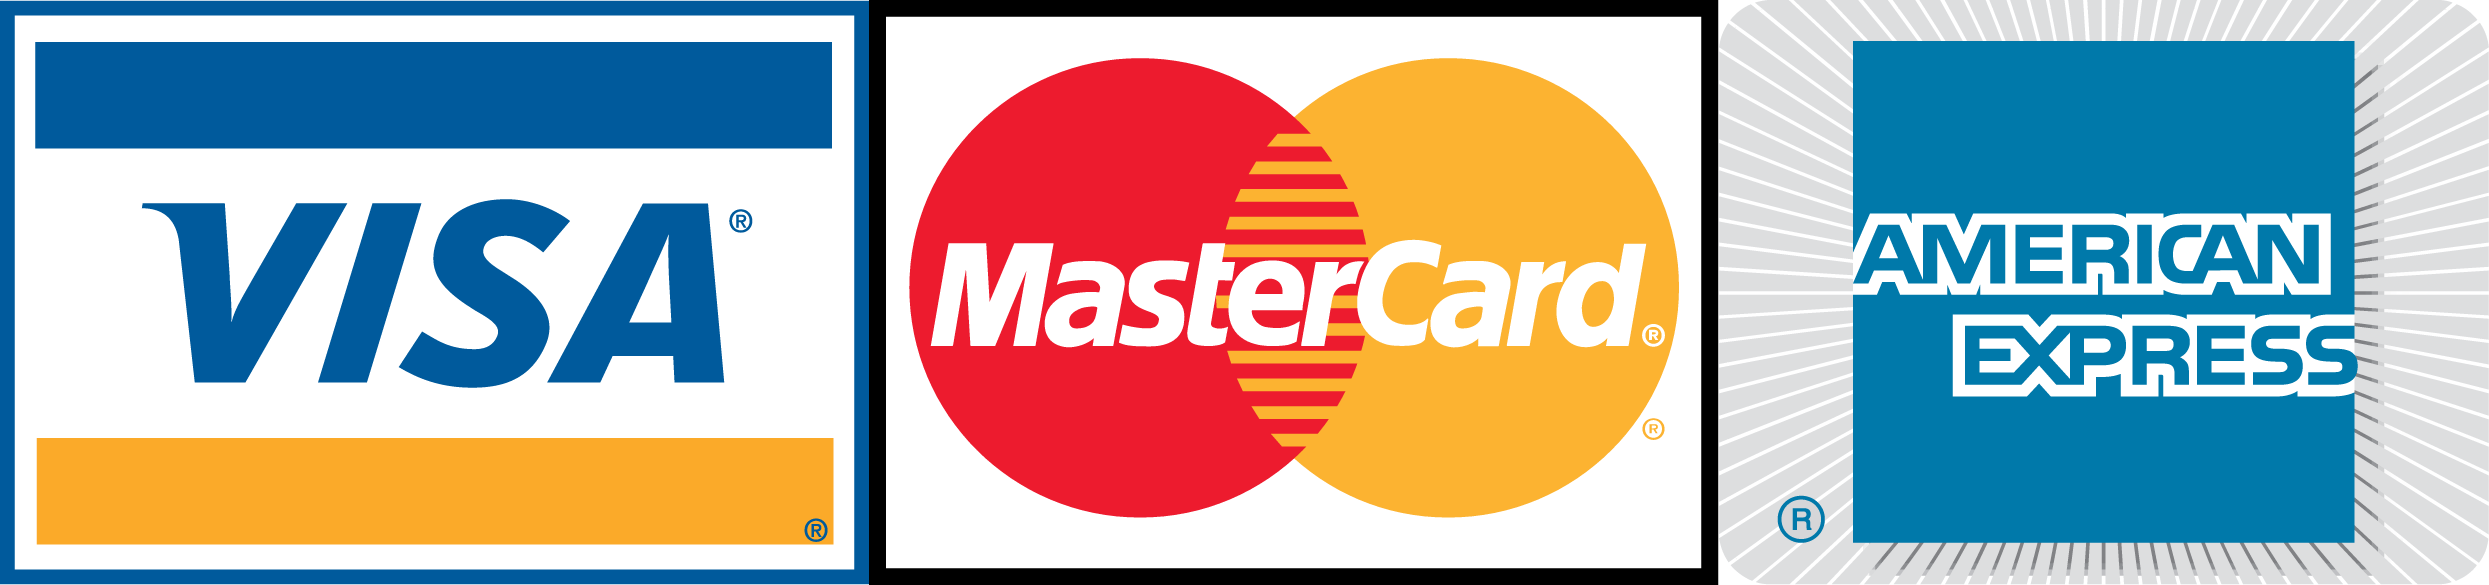 Mastercard PNG Image